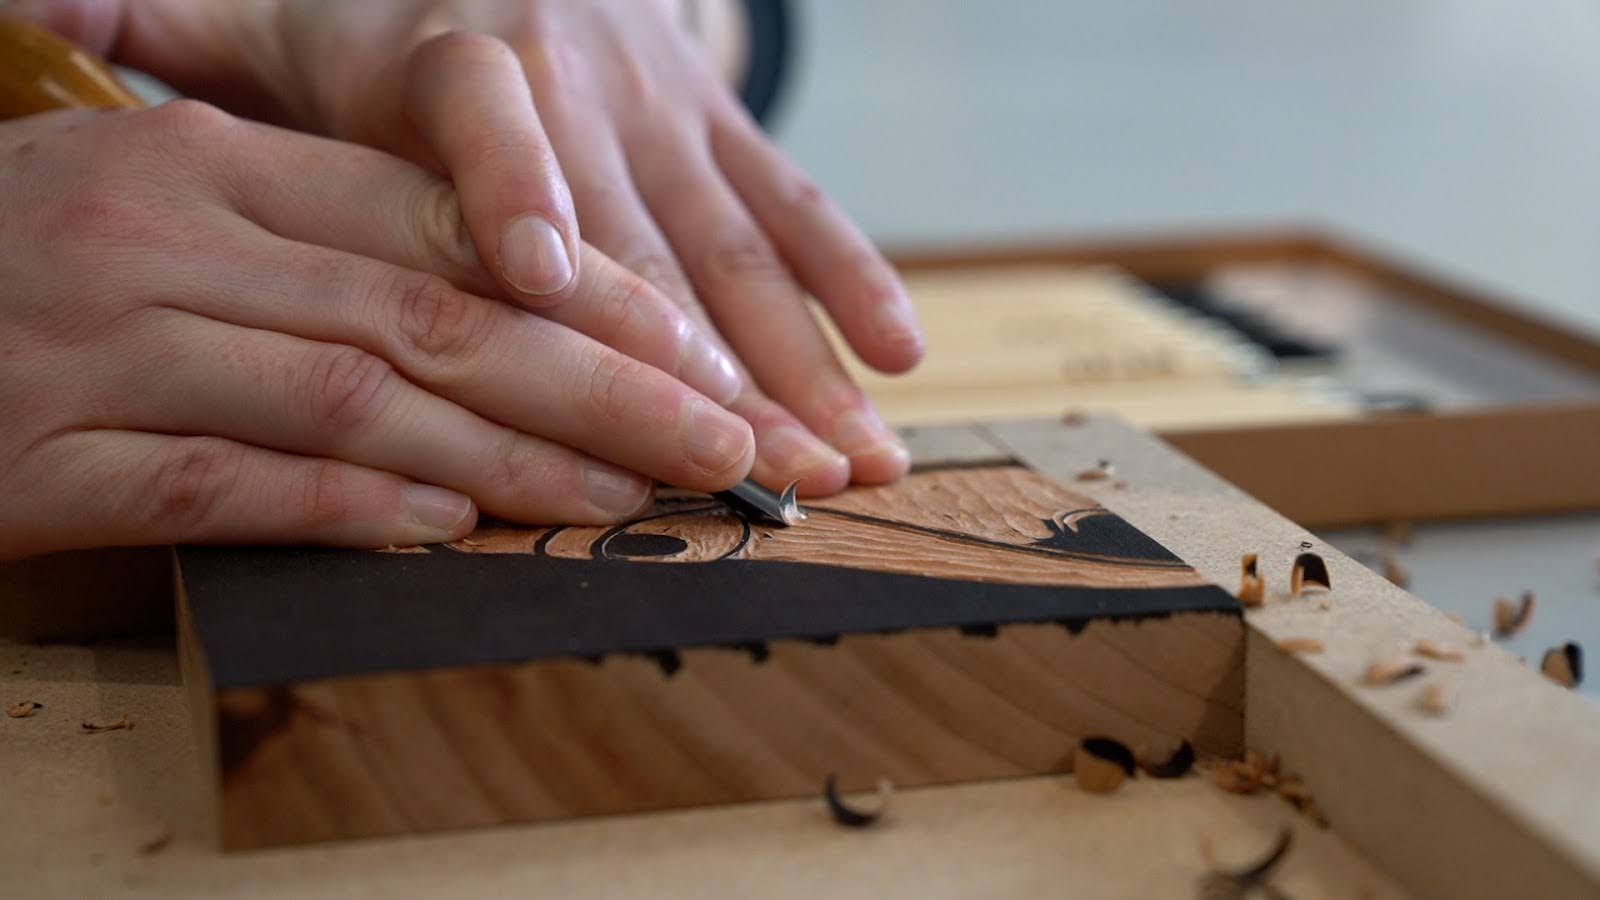 Hands carving a woodblock